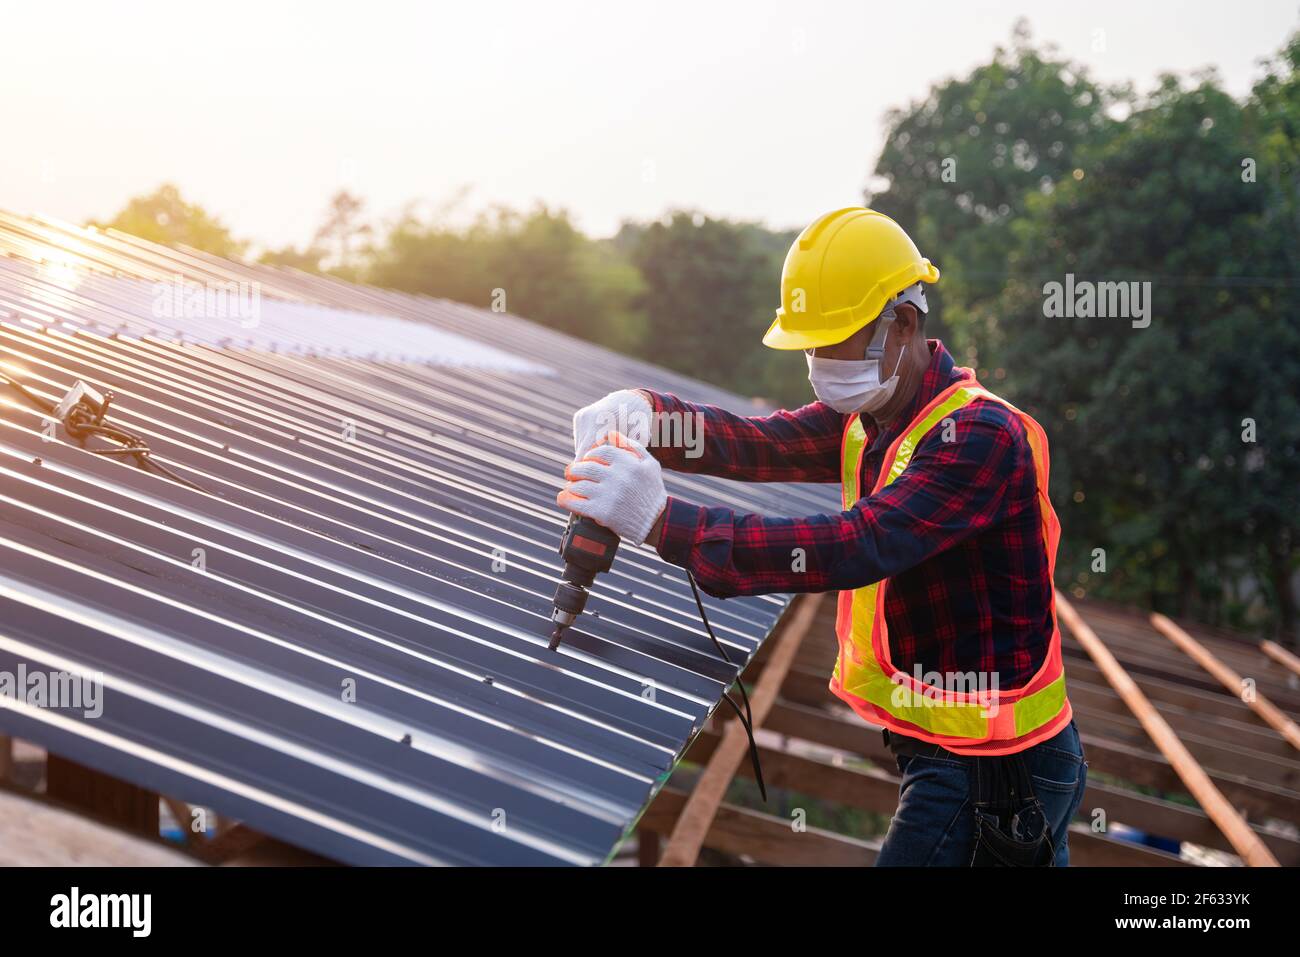 Asiatische Bauarbeiter Sicherheitsverschleiß mit elektrischen Bohrwerkzeugen installieren auf dem neuen Dach Metallblech, Dachkonstruktion Konzept. Stockfoto